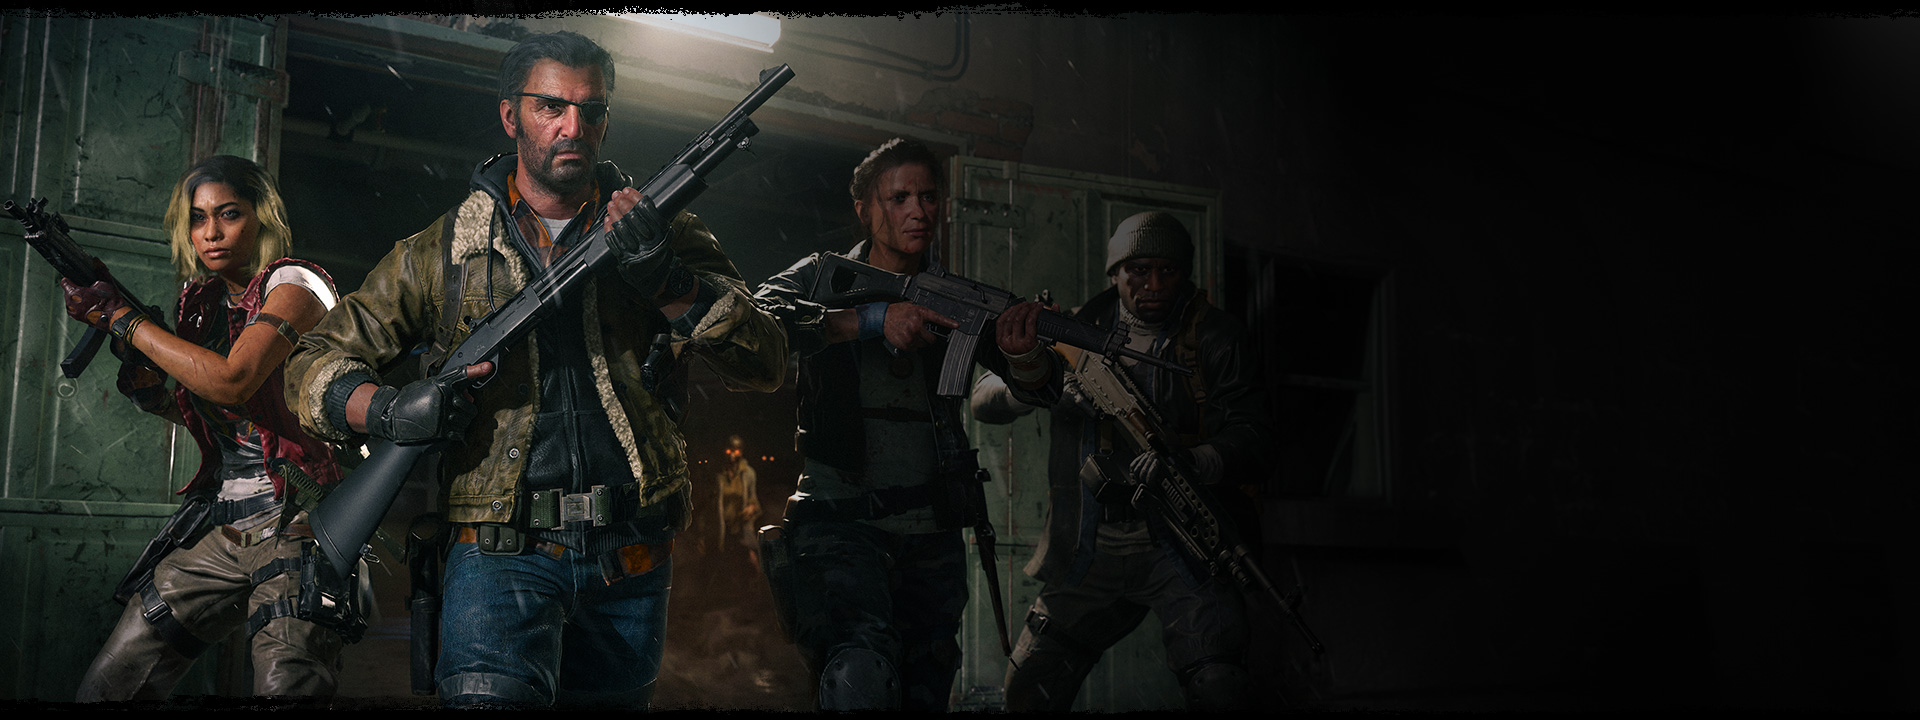 銃を高く掲げて倉庫を出る 4 人のキャラクターと、彼らの背後に立つ目がオレンジ色に光るゾンビ。